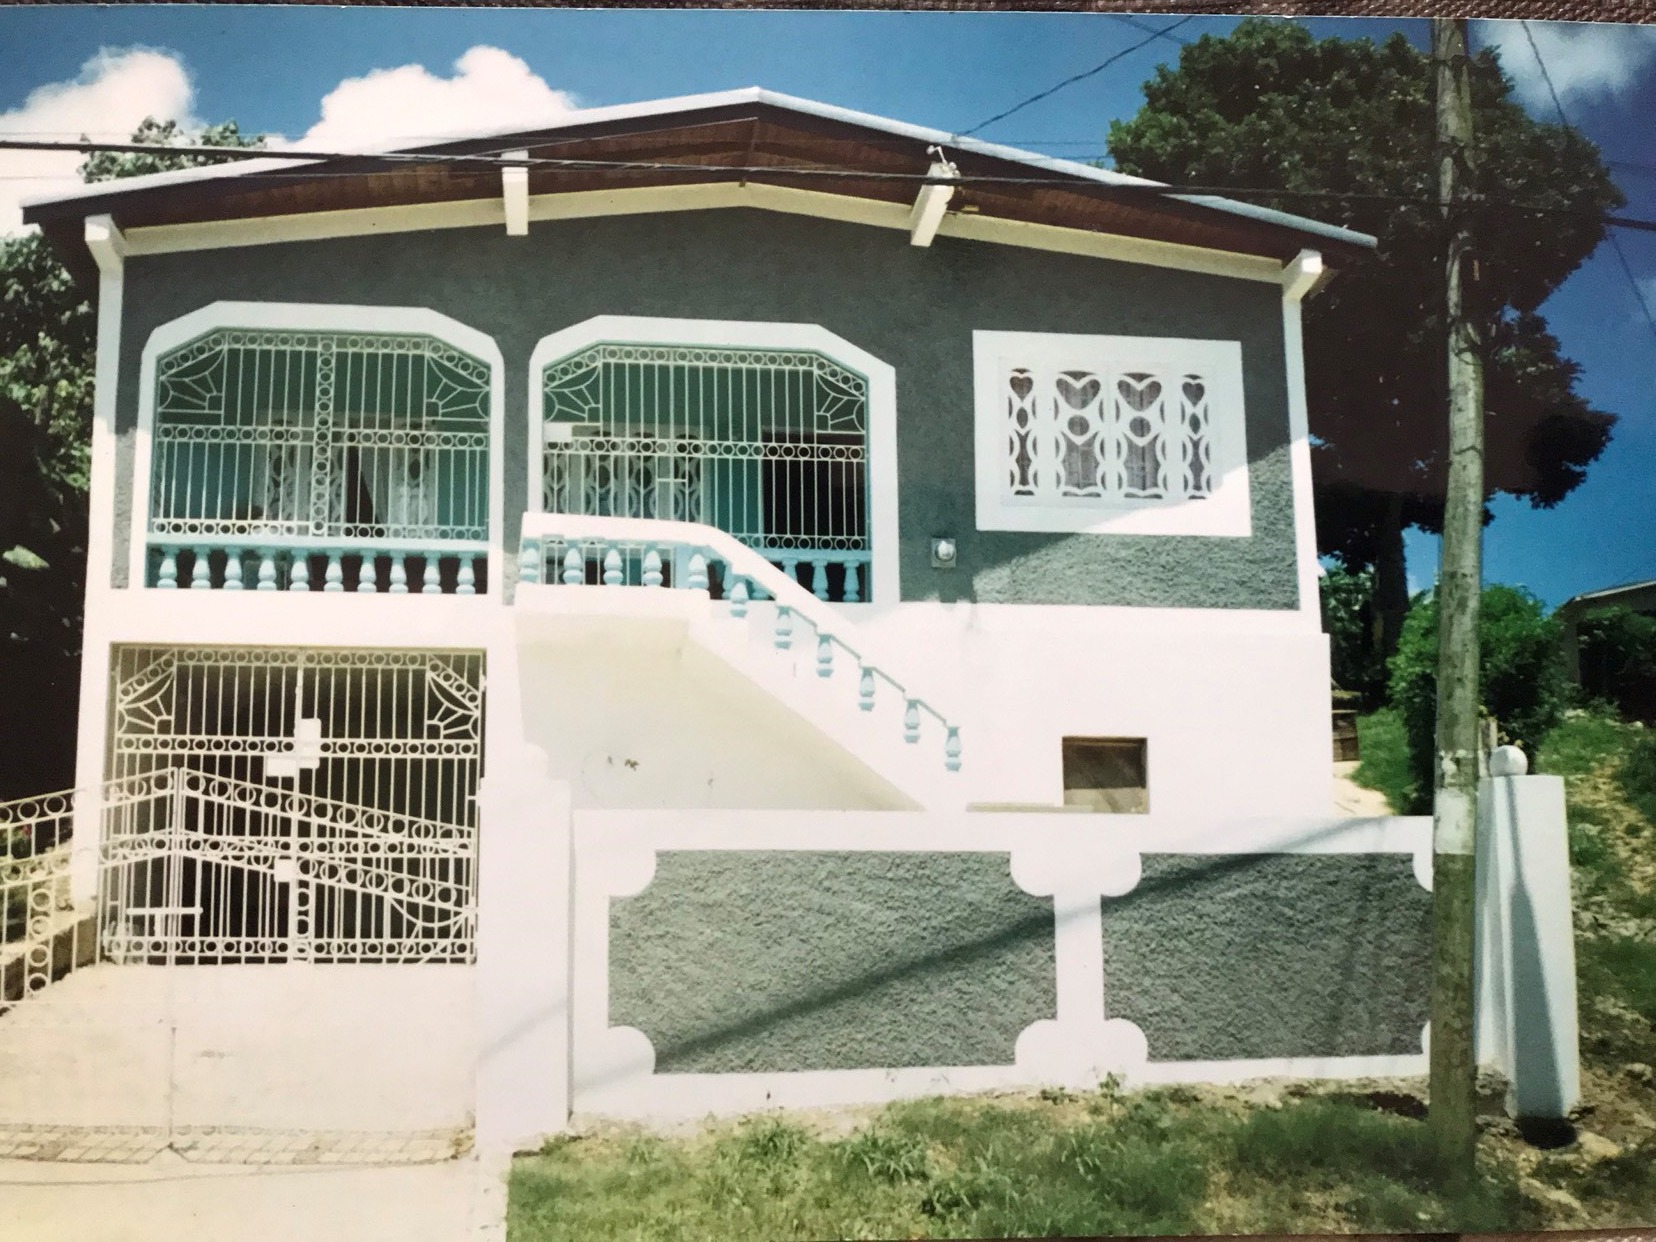 Erics home in Jamaica